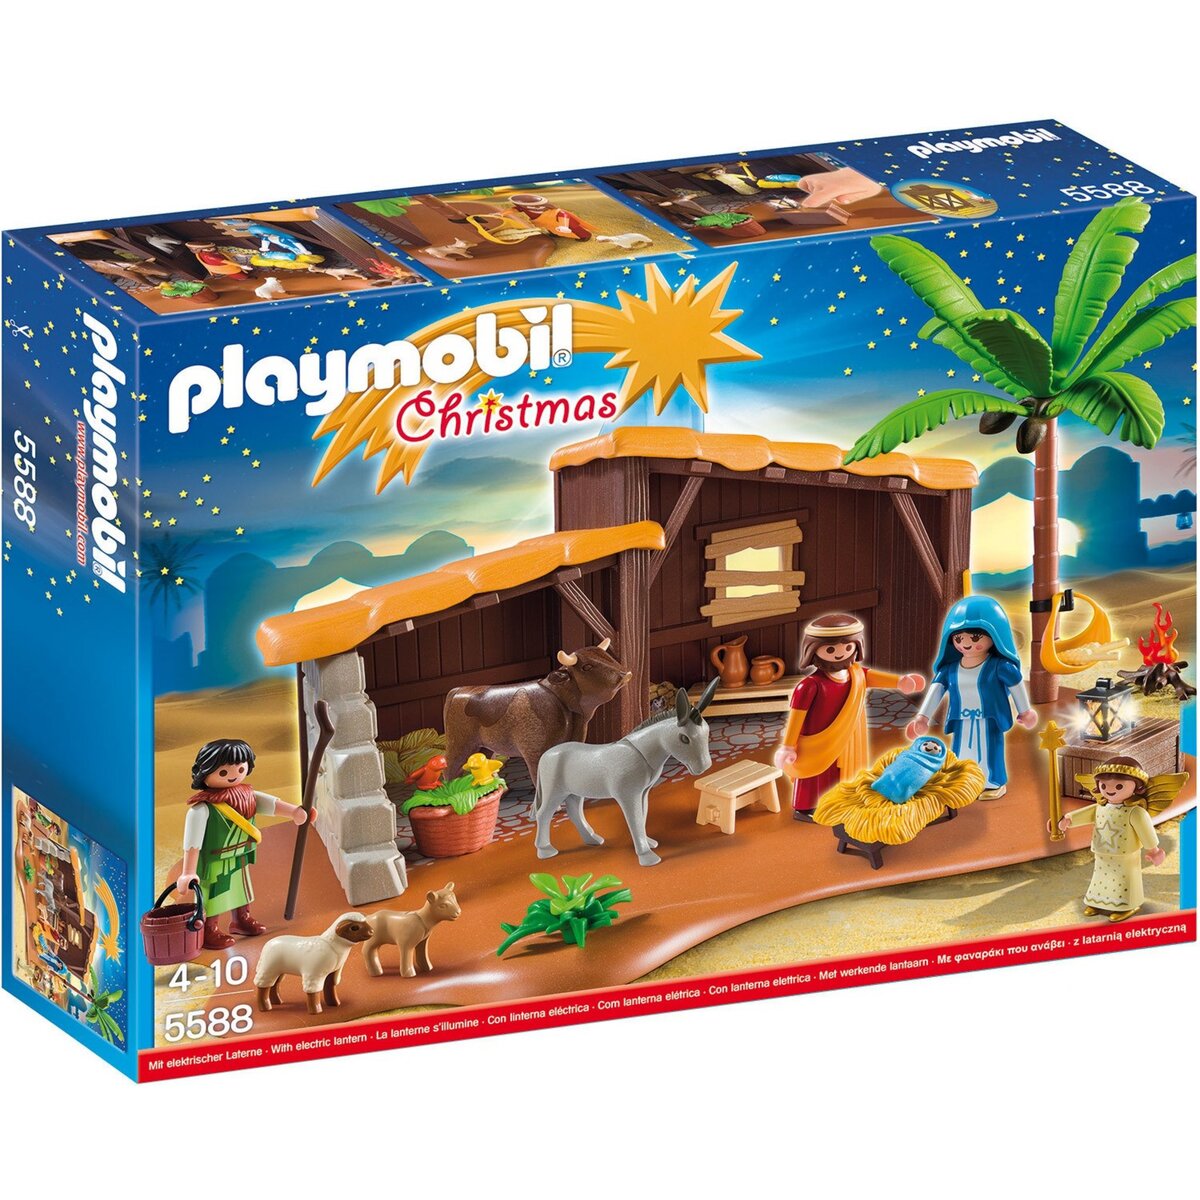 PLAYMOBIL 5588 Playmobil Christmas - Crèche de Noël pas cher